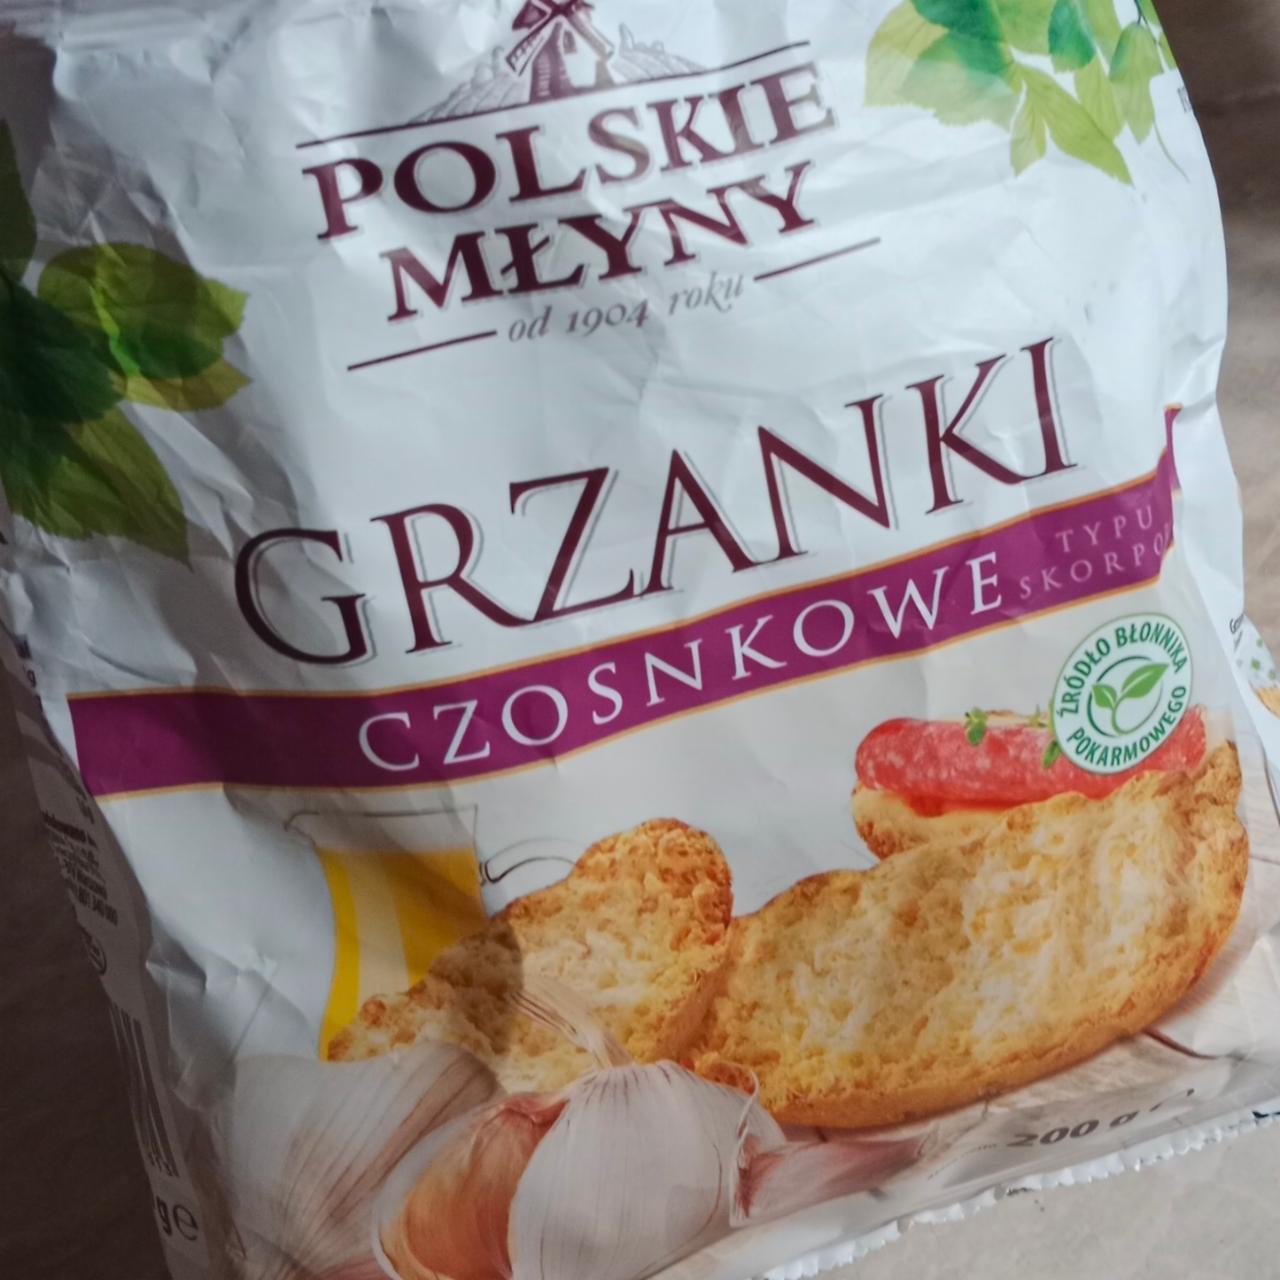 Fotografie - Grzanki czosnkowe Polskie młyny